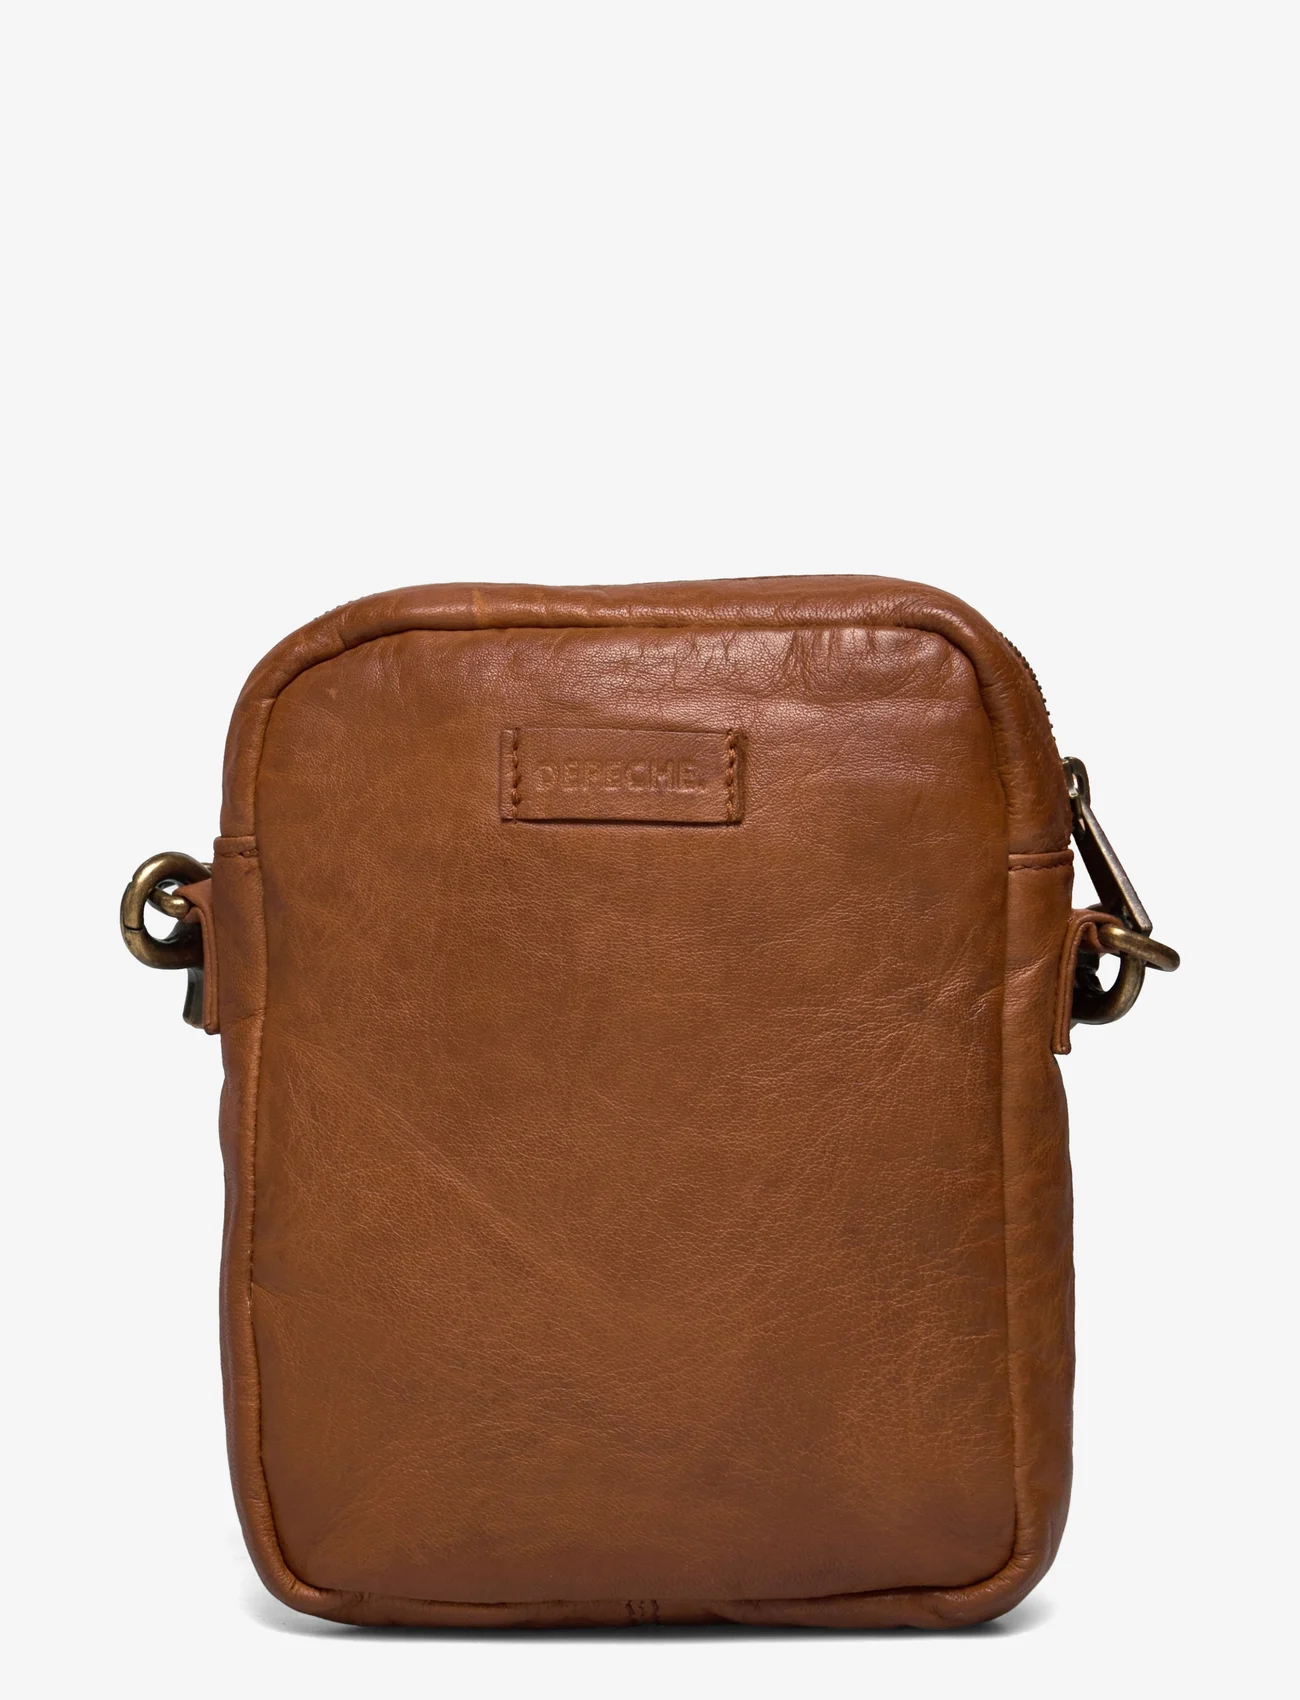 DEPECHE - Mobile bag - mobilskal - 014 cognac - 1